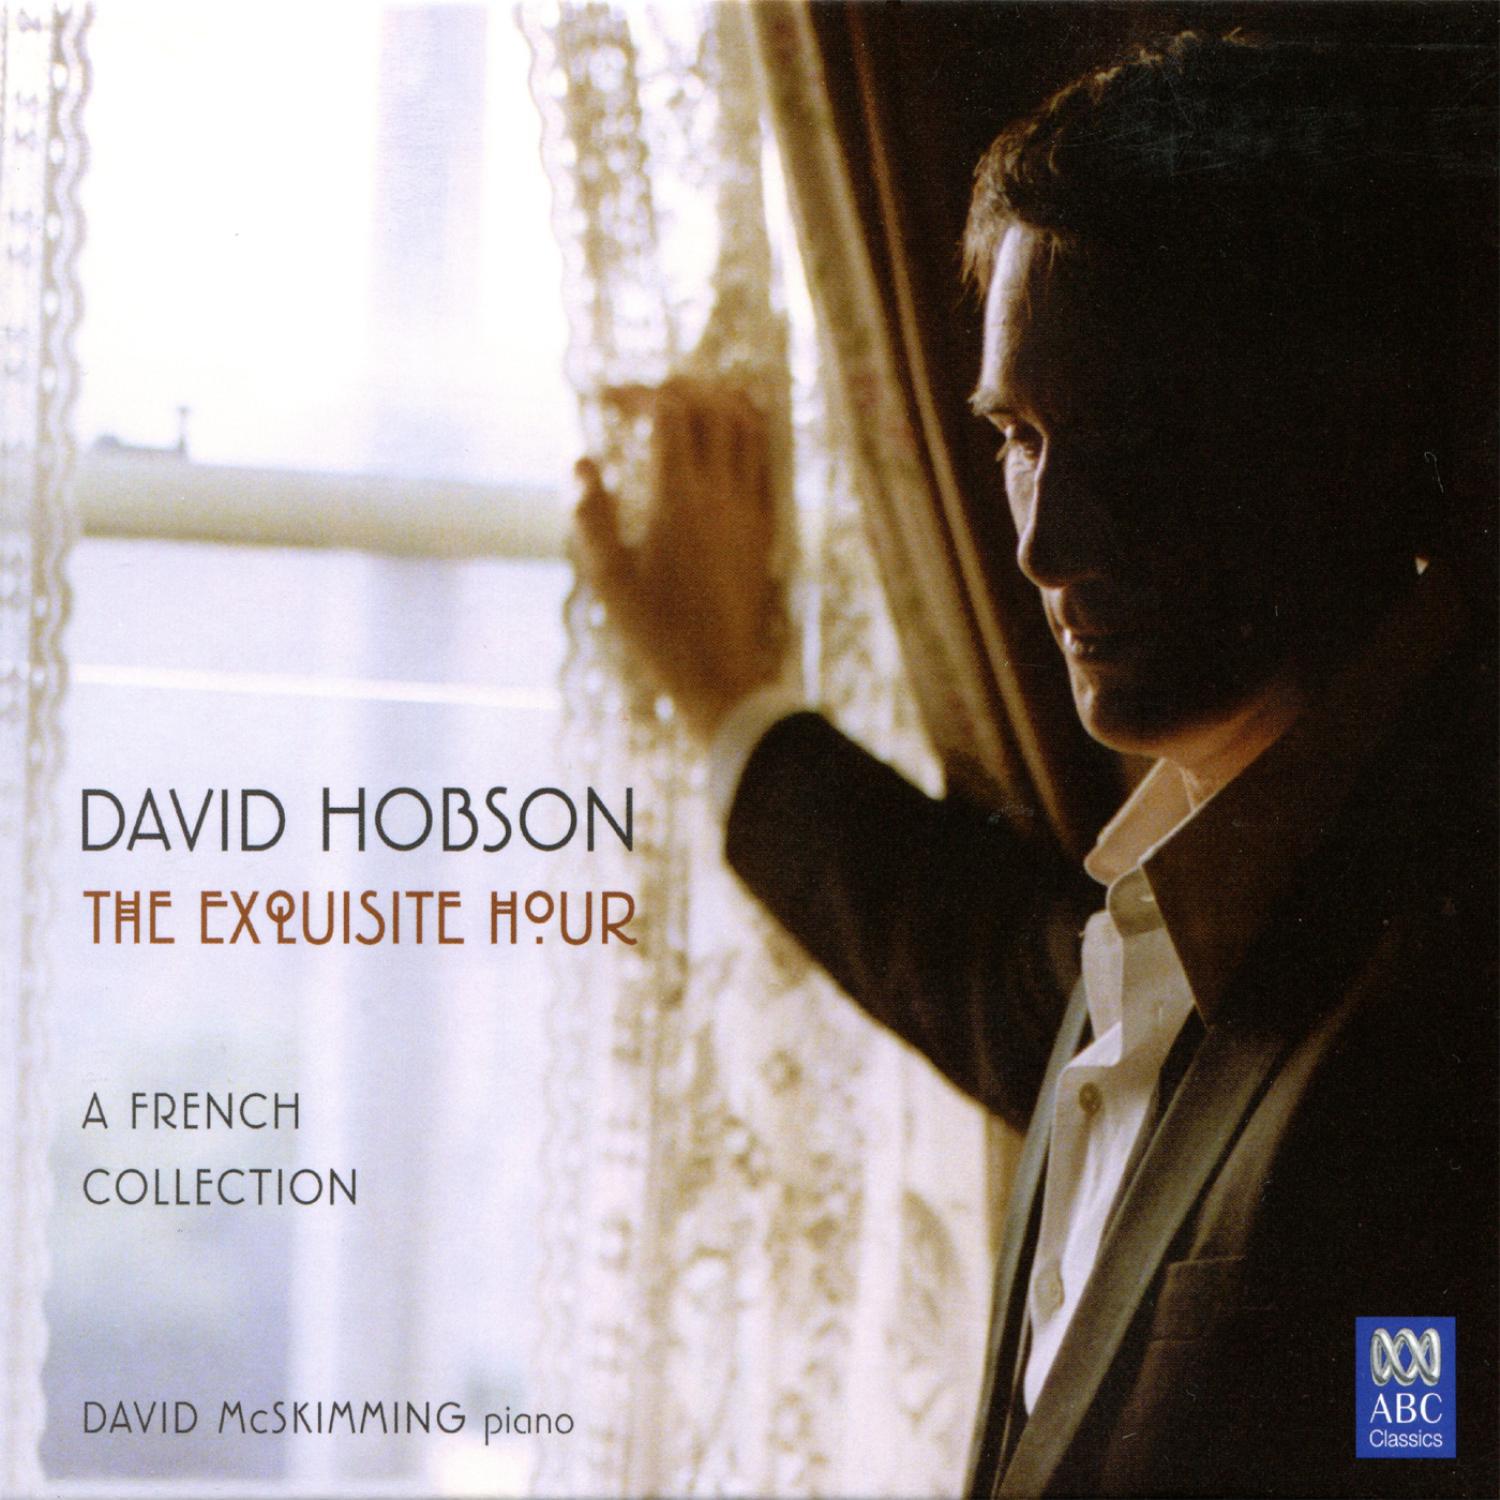 David Hobson - Fêtes galantes (Courtly Entertainment), from Deux poèmes de Louis Aragon, Op. 122